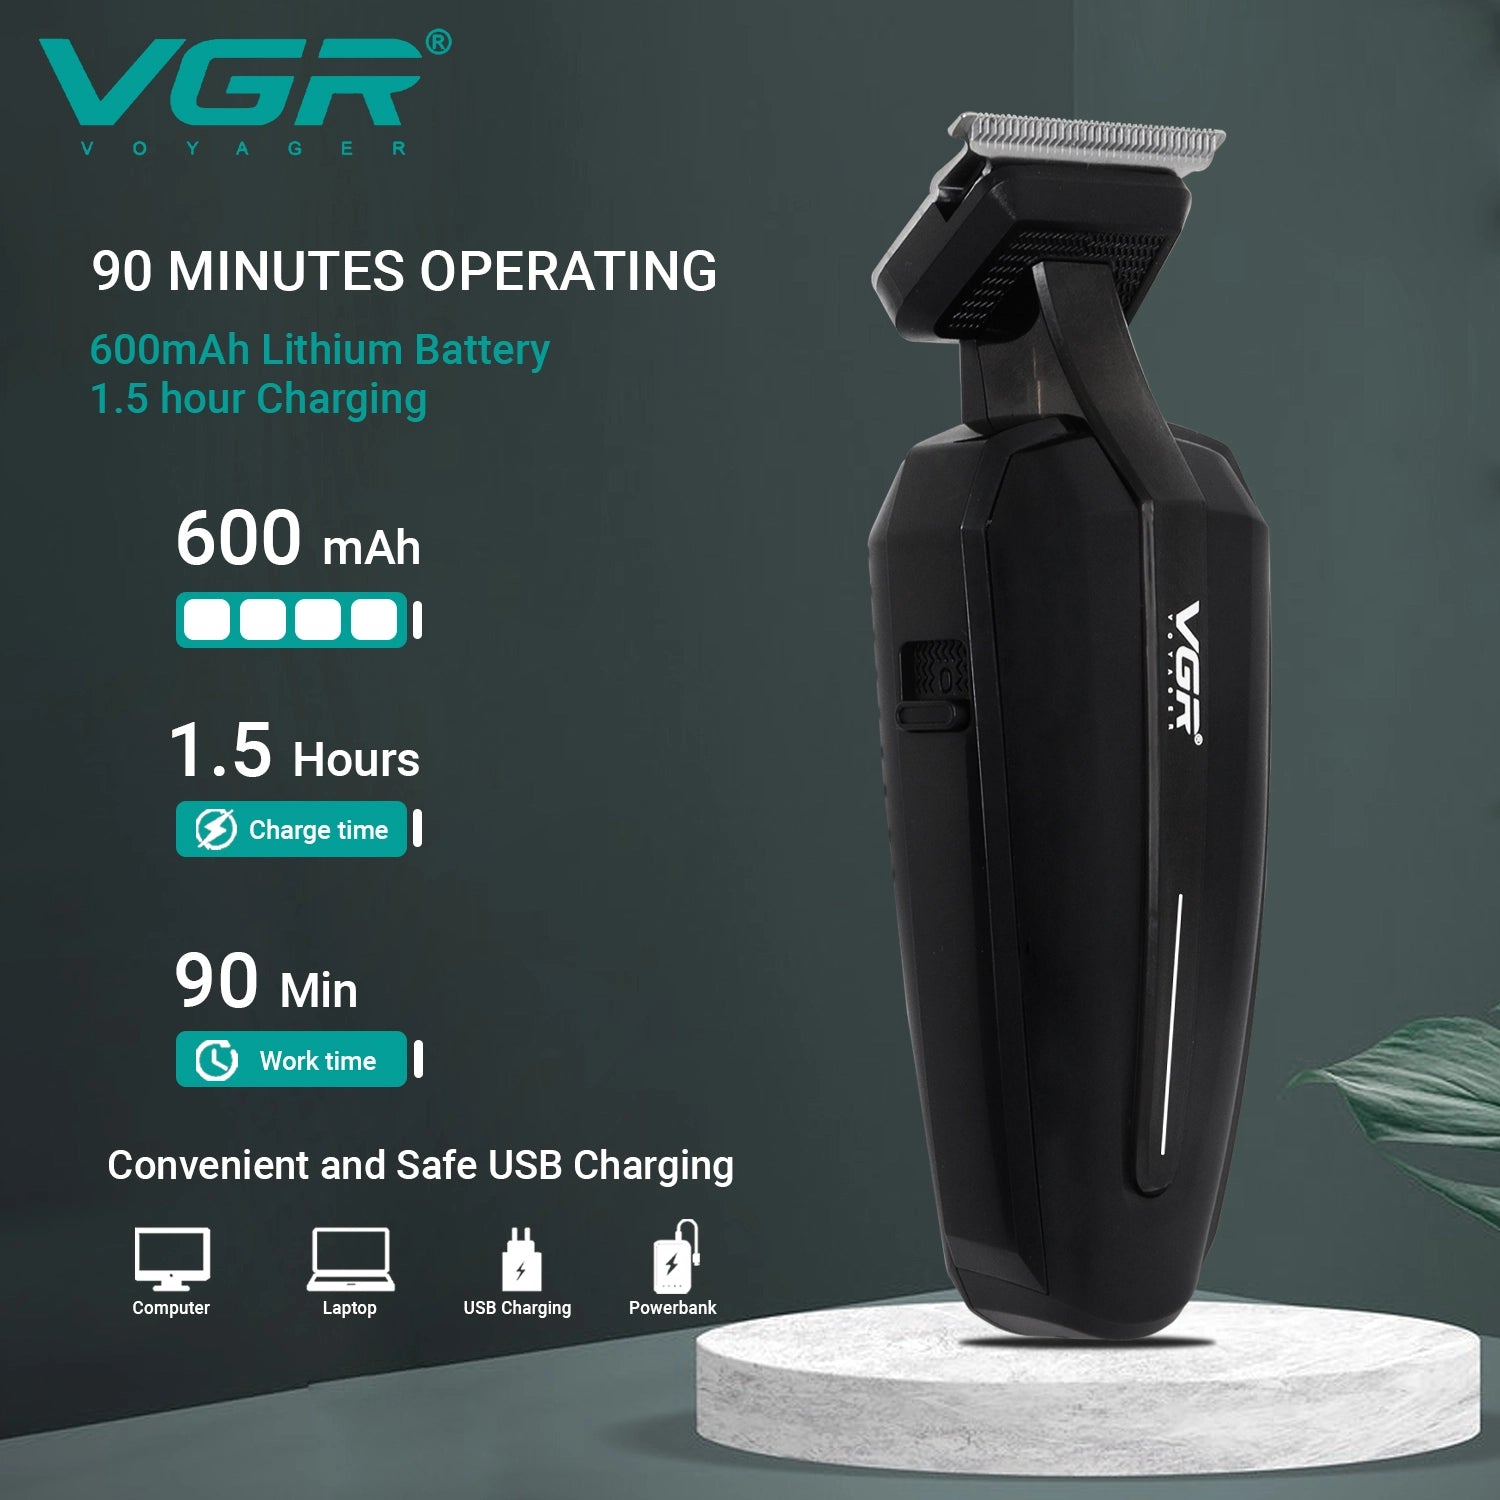 VGR, VGRindia, VGRofficial, VGR V-952